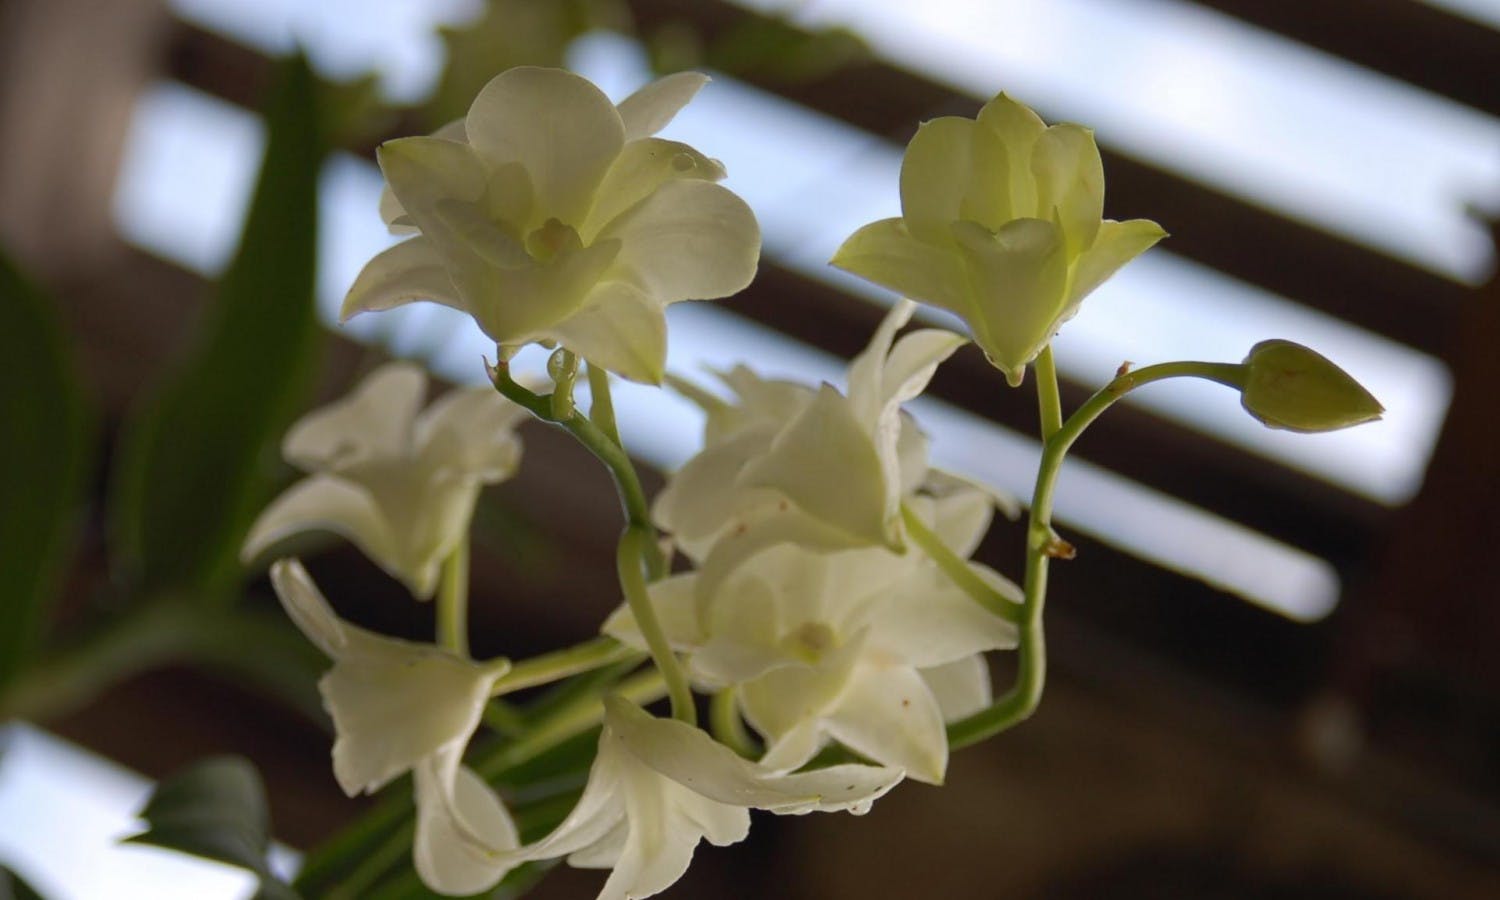 vizcaya museum - miami - gardens - white flowers.jpg